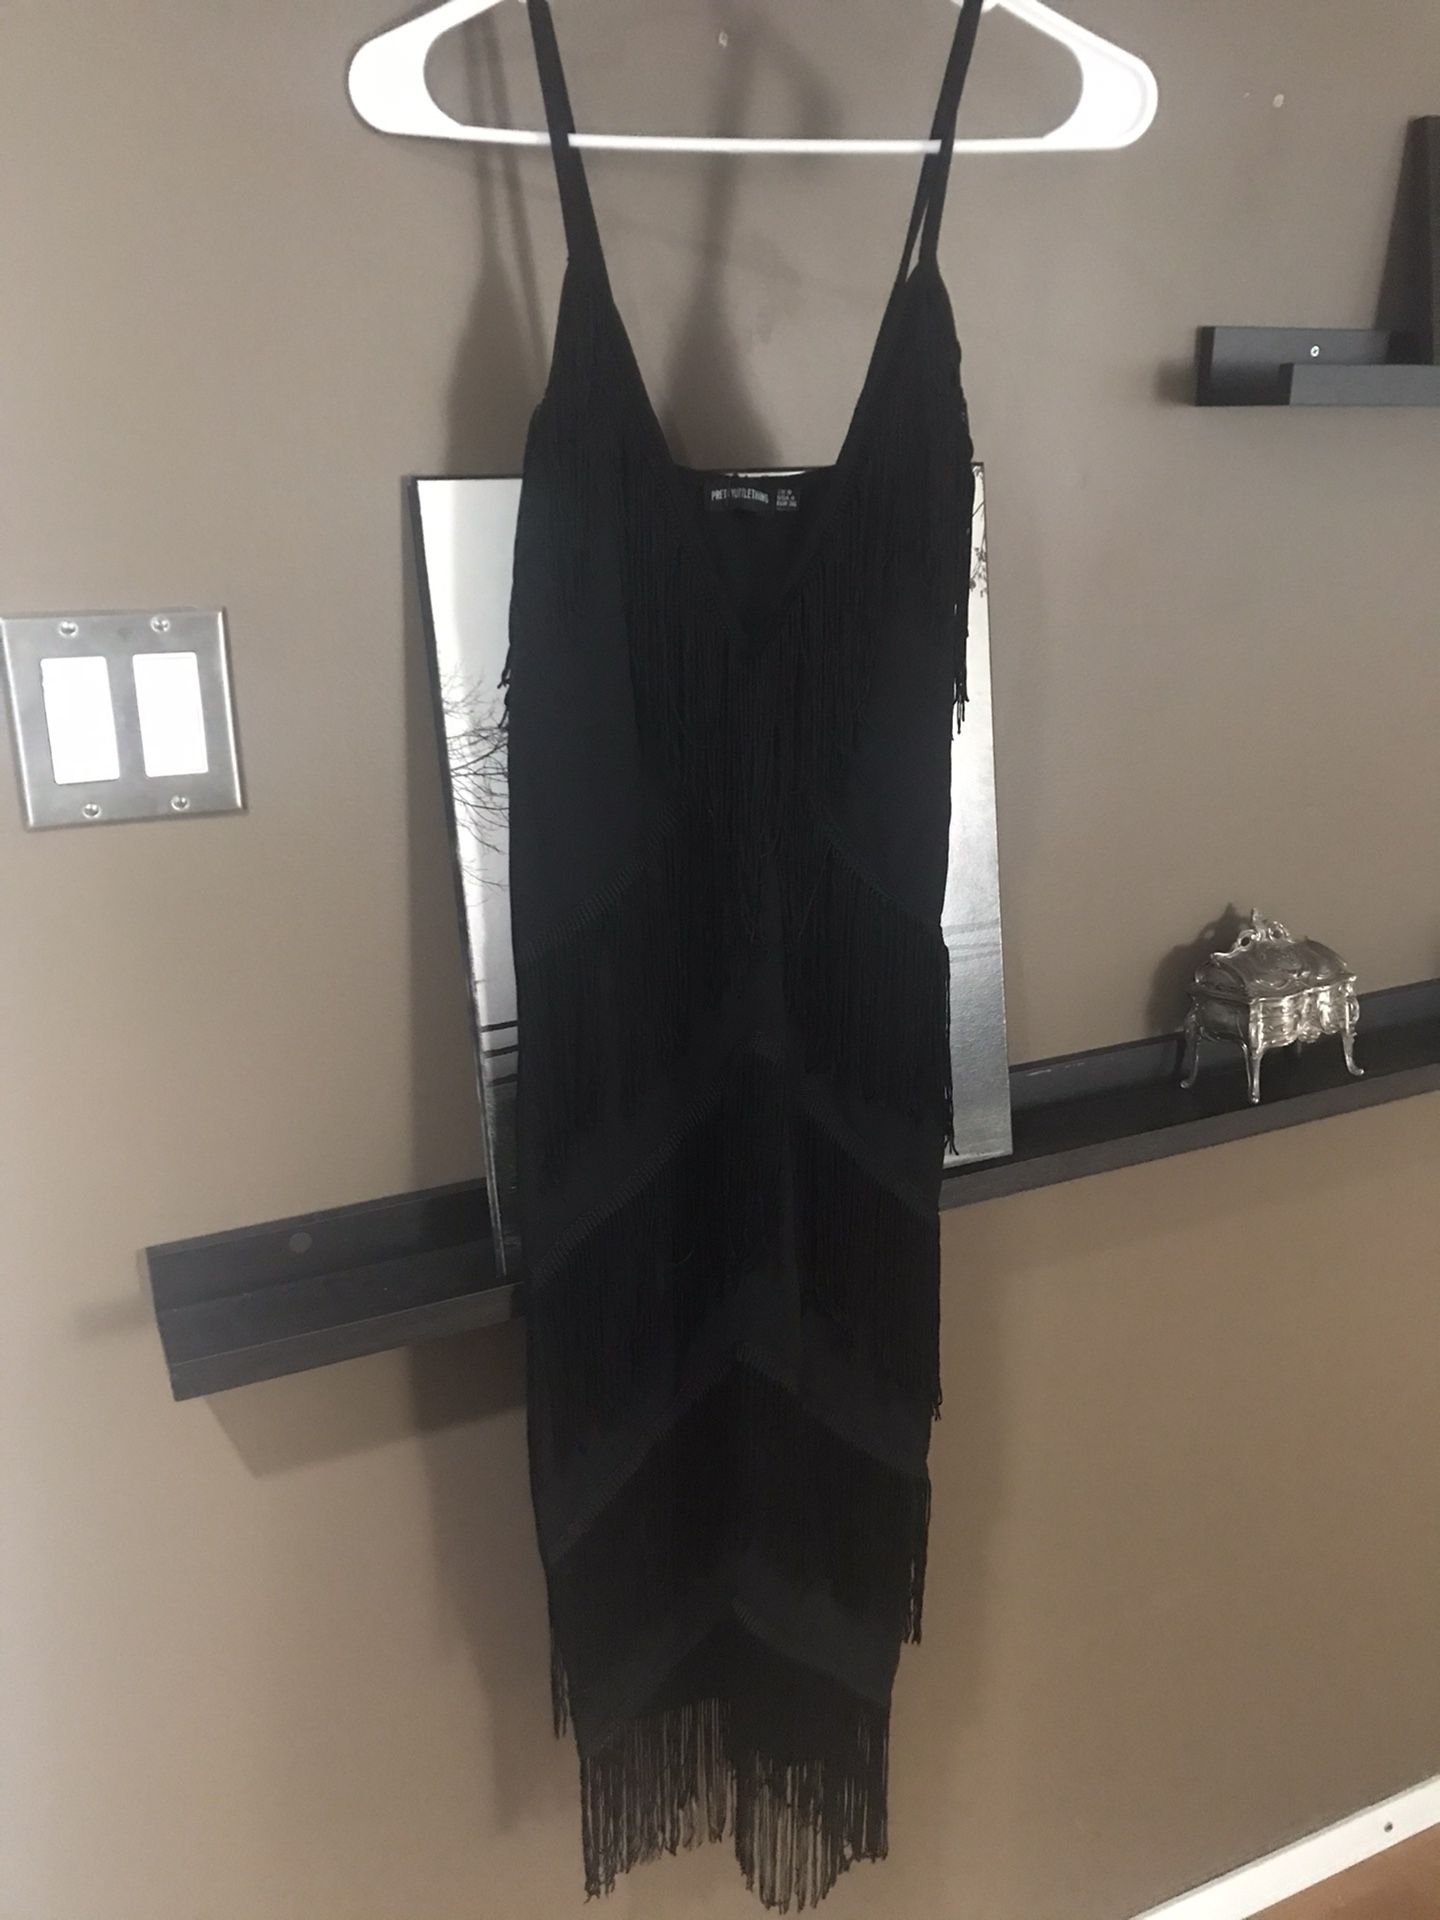 Fashion Nova 1920’s inspired fringe dress